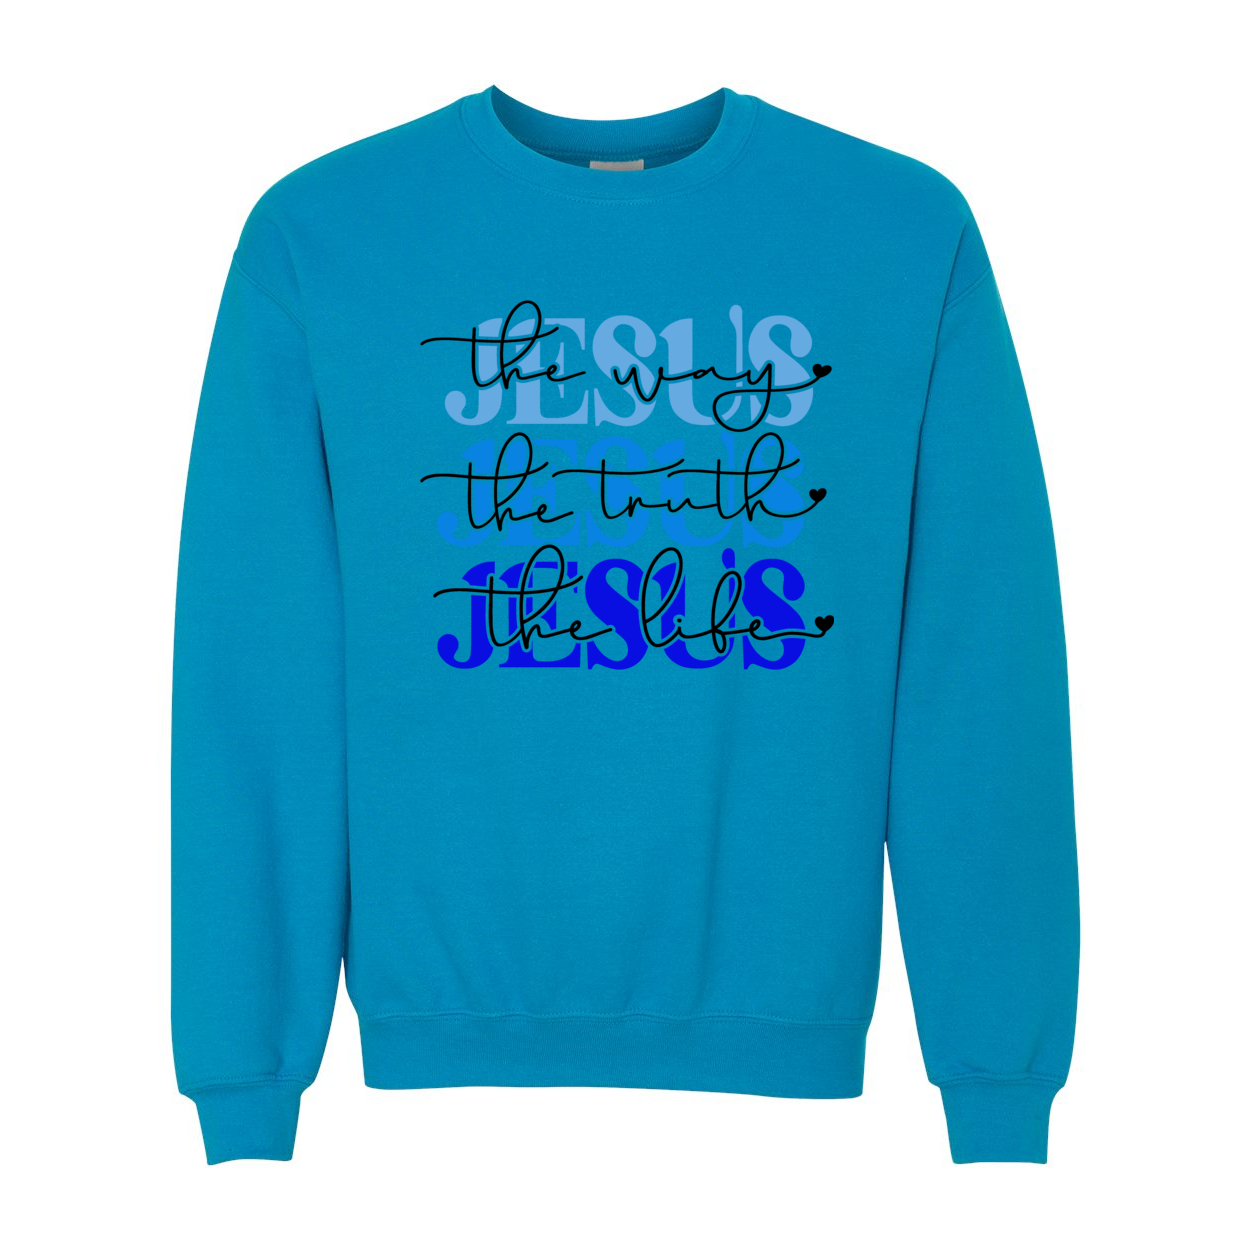 Jesus is The Way Blue Crewneck Sweatshirt